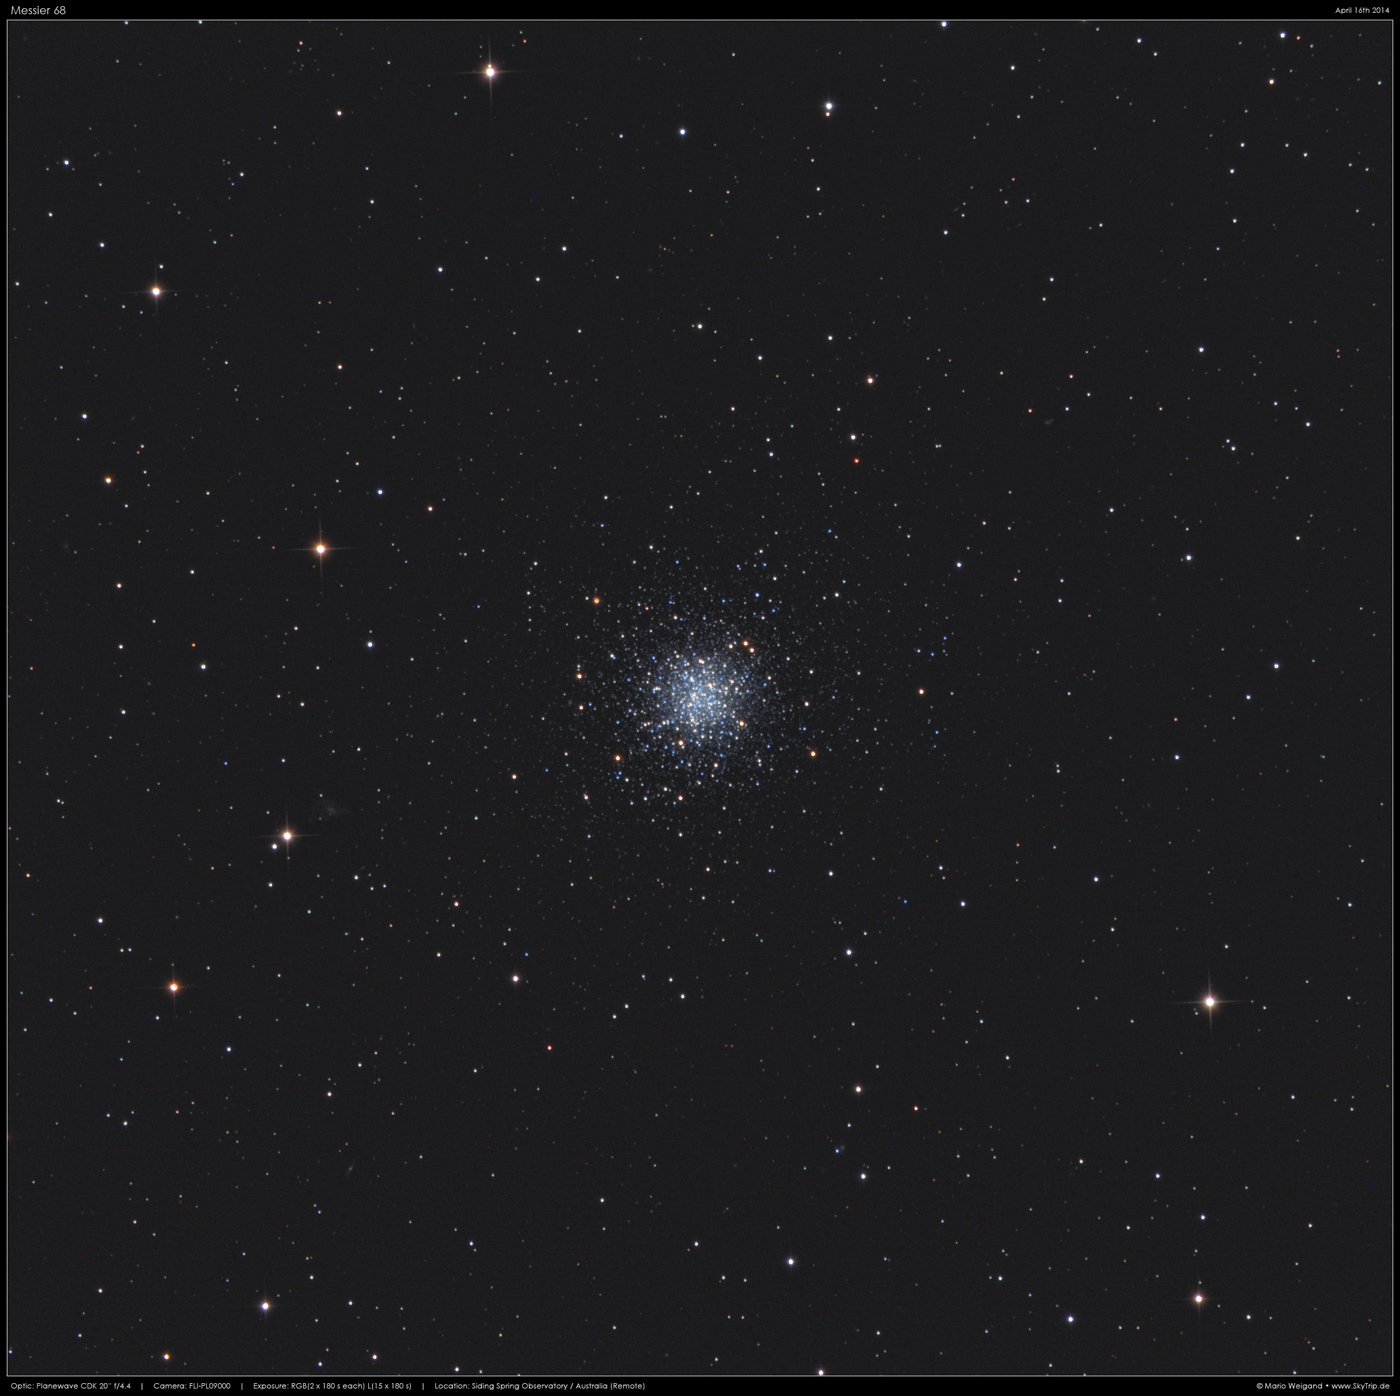 Kugelsternhaufen Messier 68